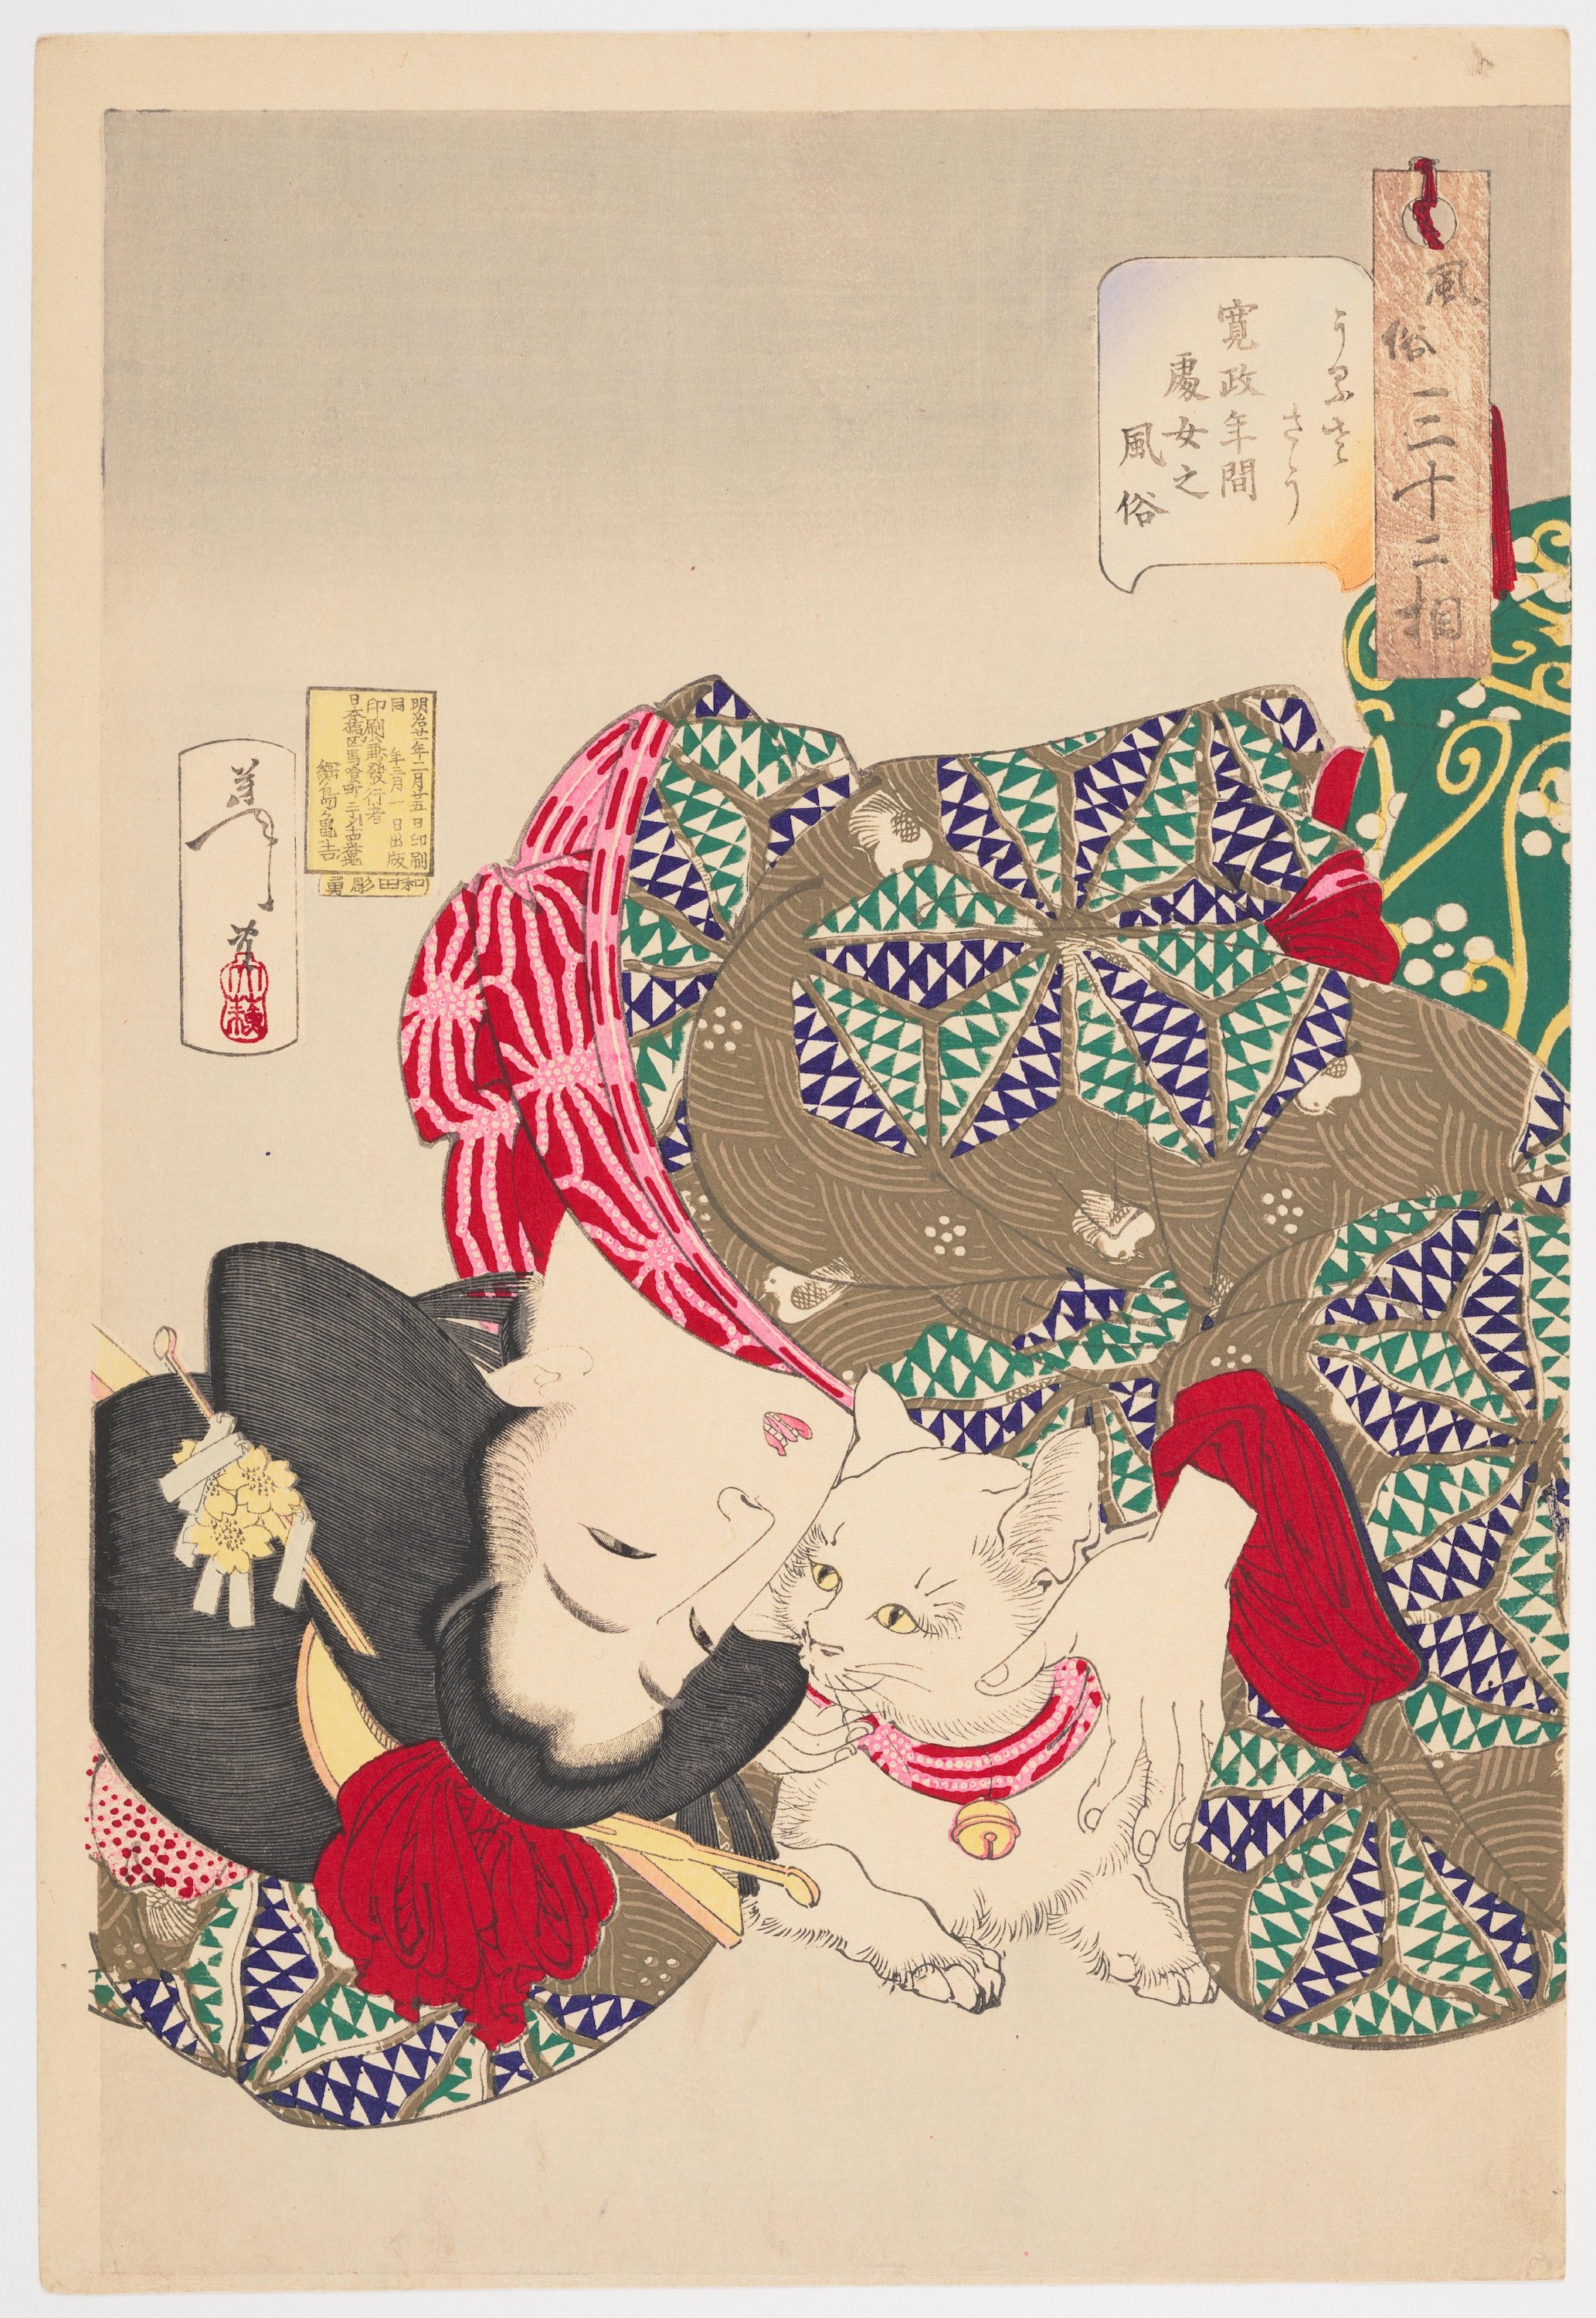 風俗三十二相 うるささう 寛政年間処女之風俗 by Tsukioka Yoshitoshi - 1888年 - 39.4 × 26.7 cm 